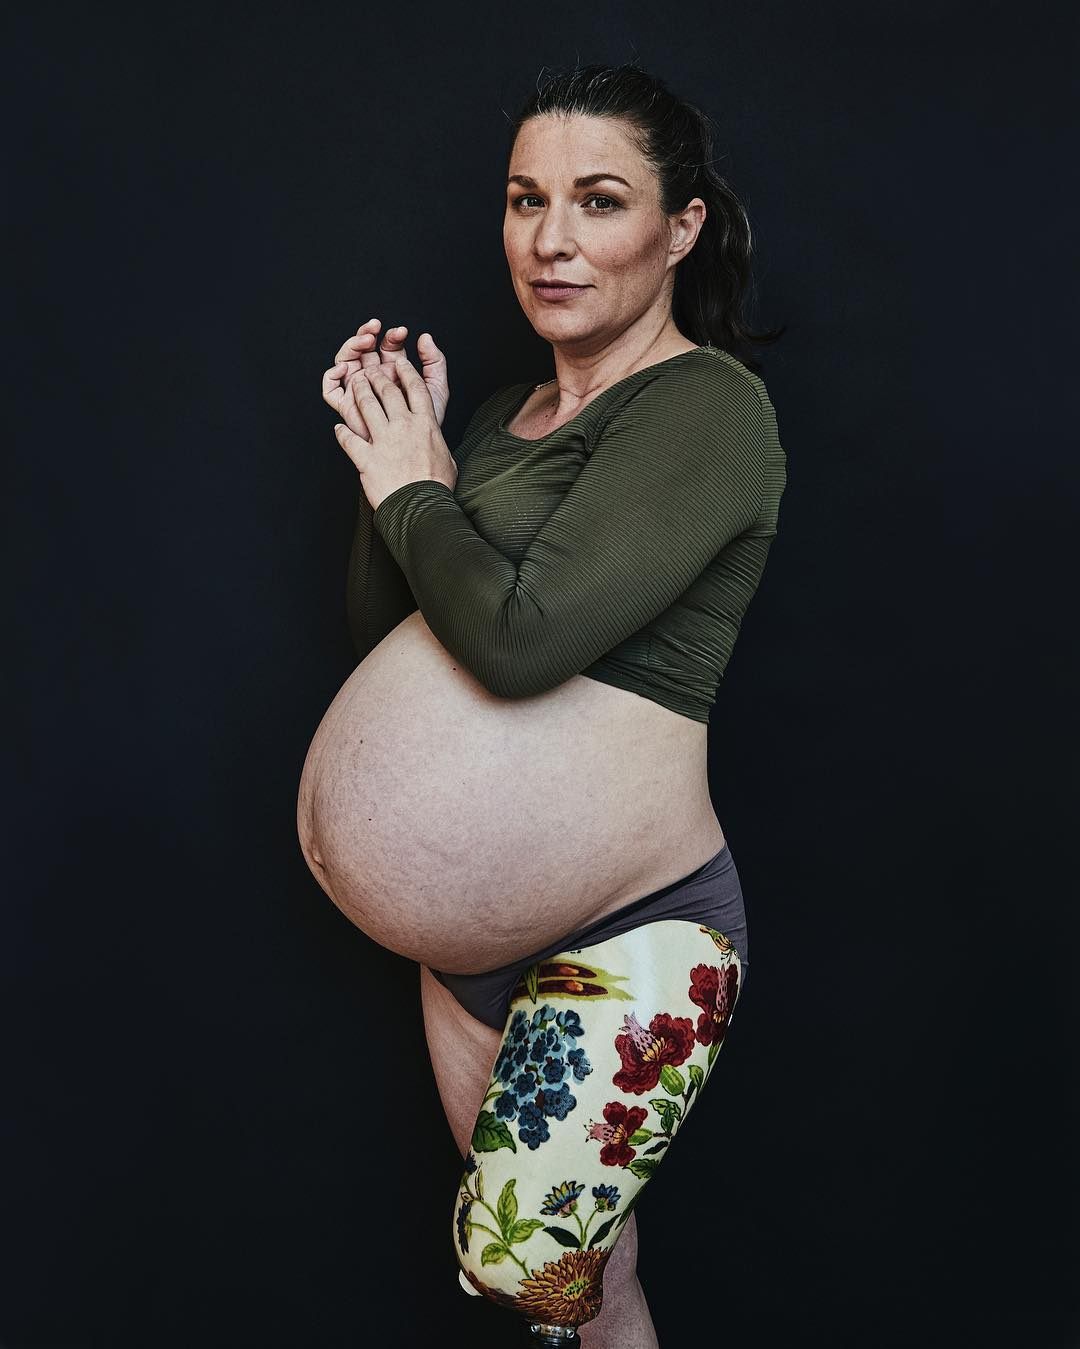 Беременная фотосессия женщины-инвалида покорила соцсети. Смело и красиво!